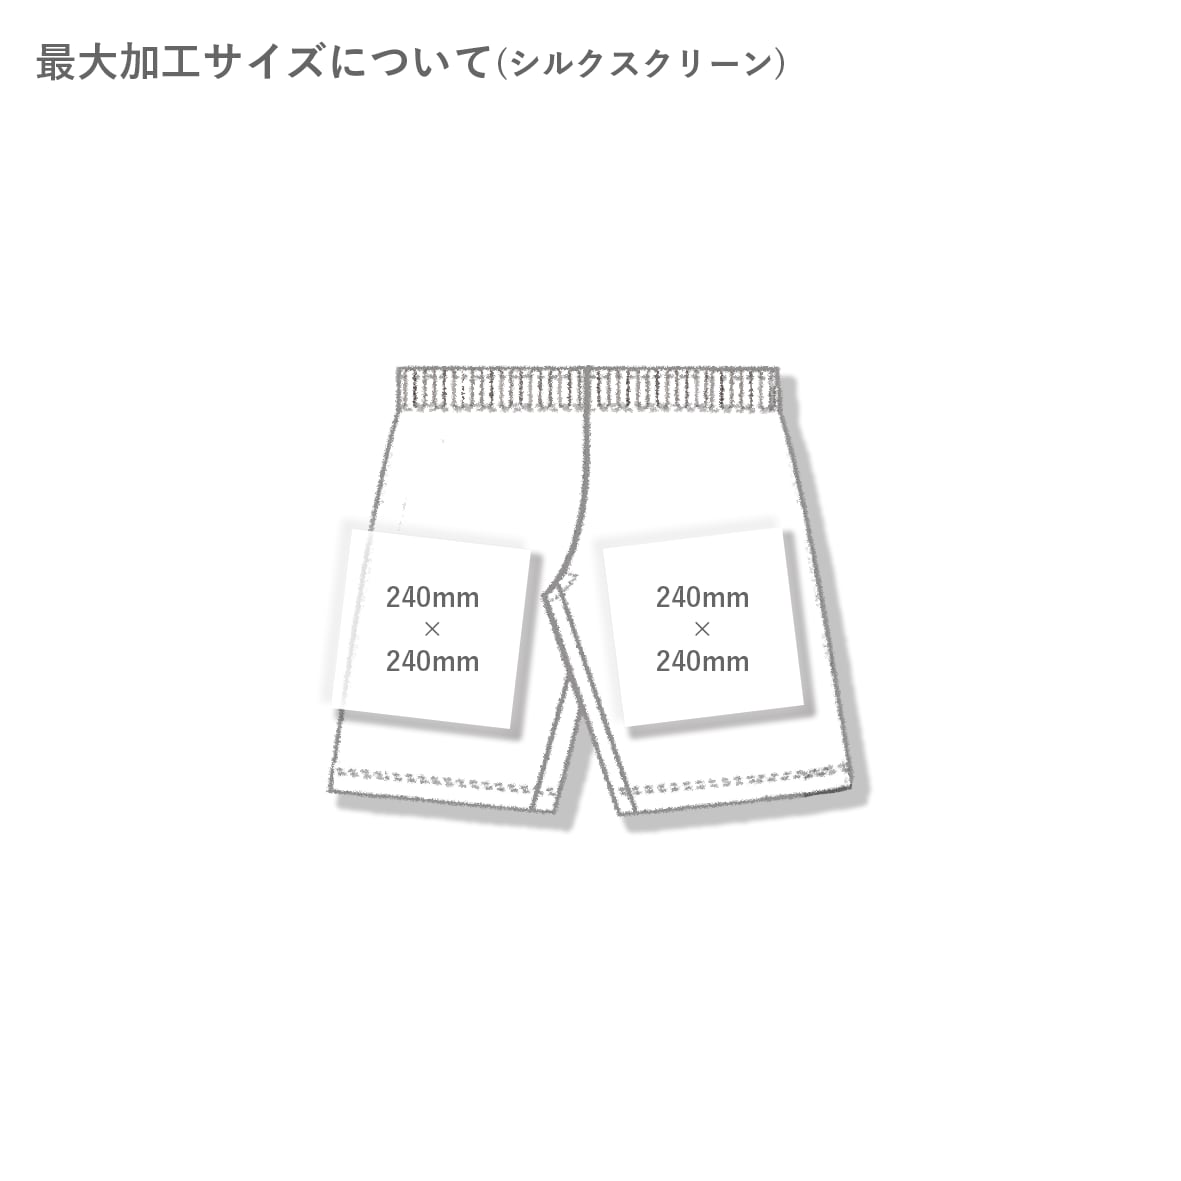 【在庫限り】AS Colour アズカラー 3.2 oz Mens Boxer Shorts (品番1202US)